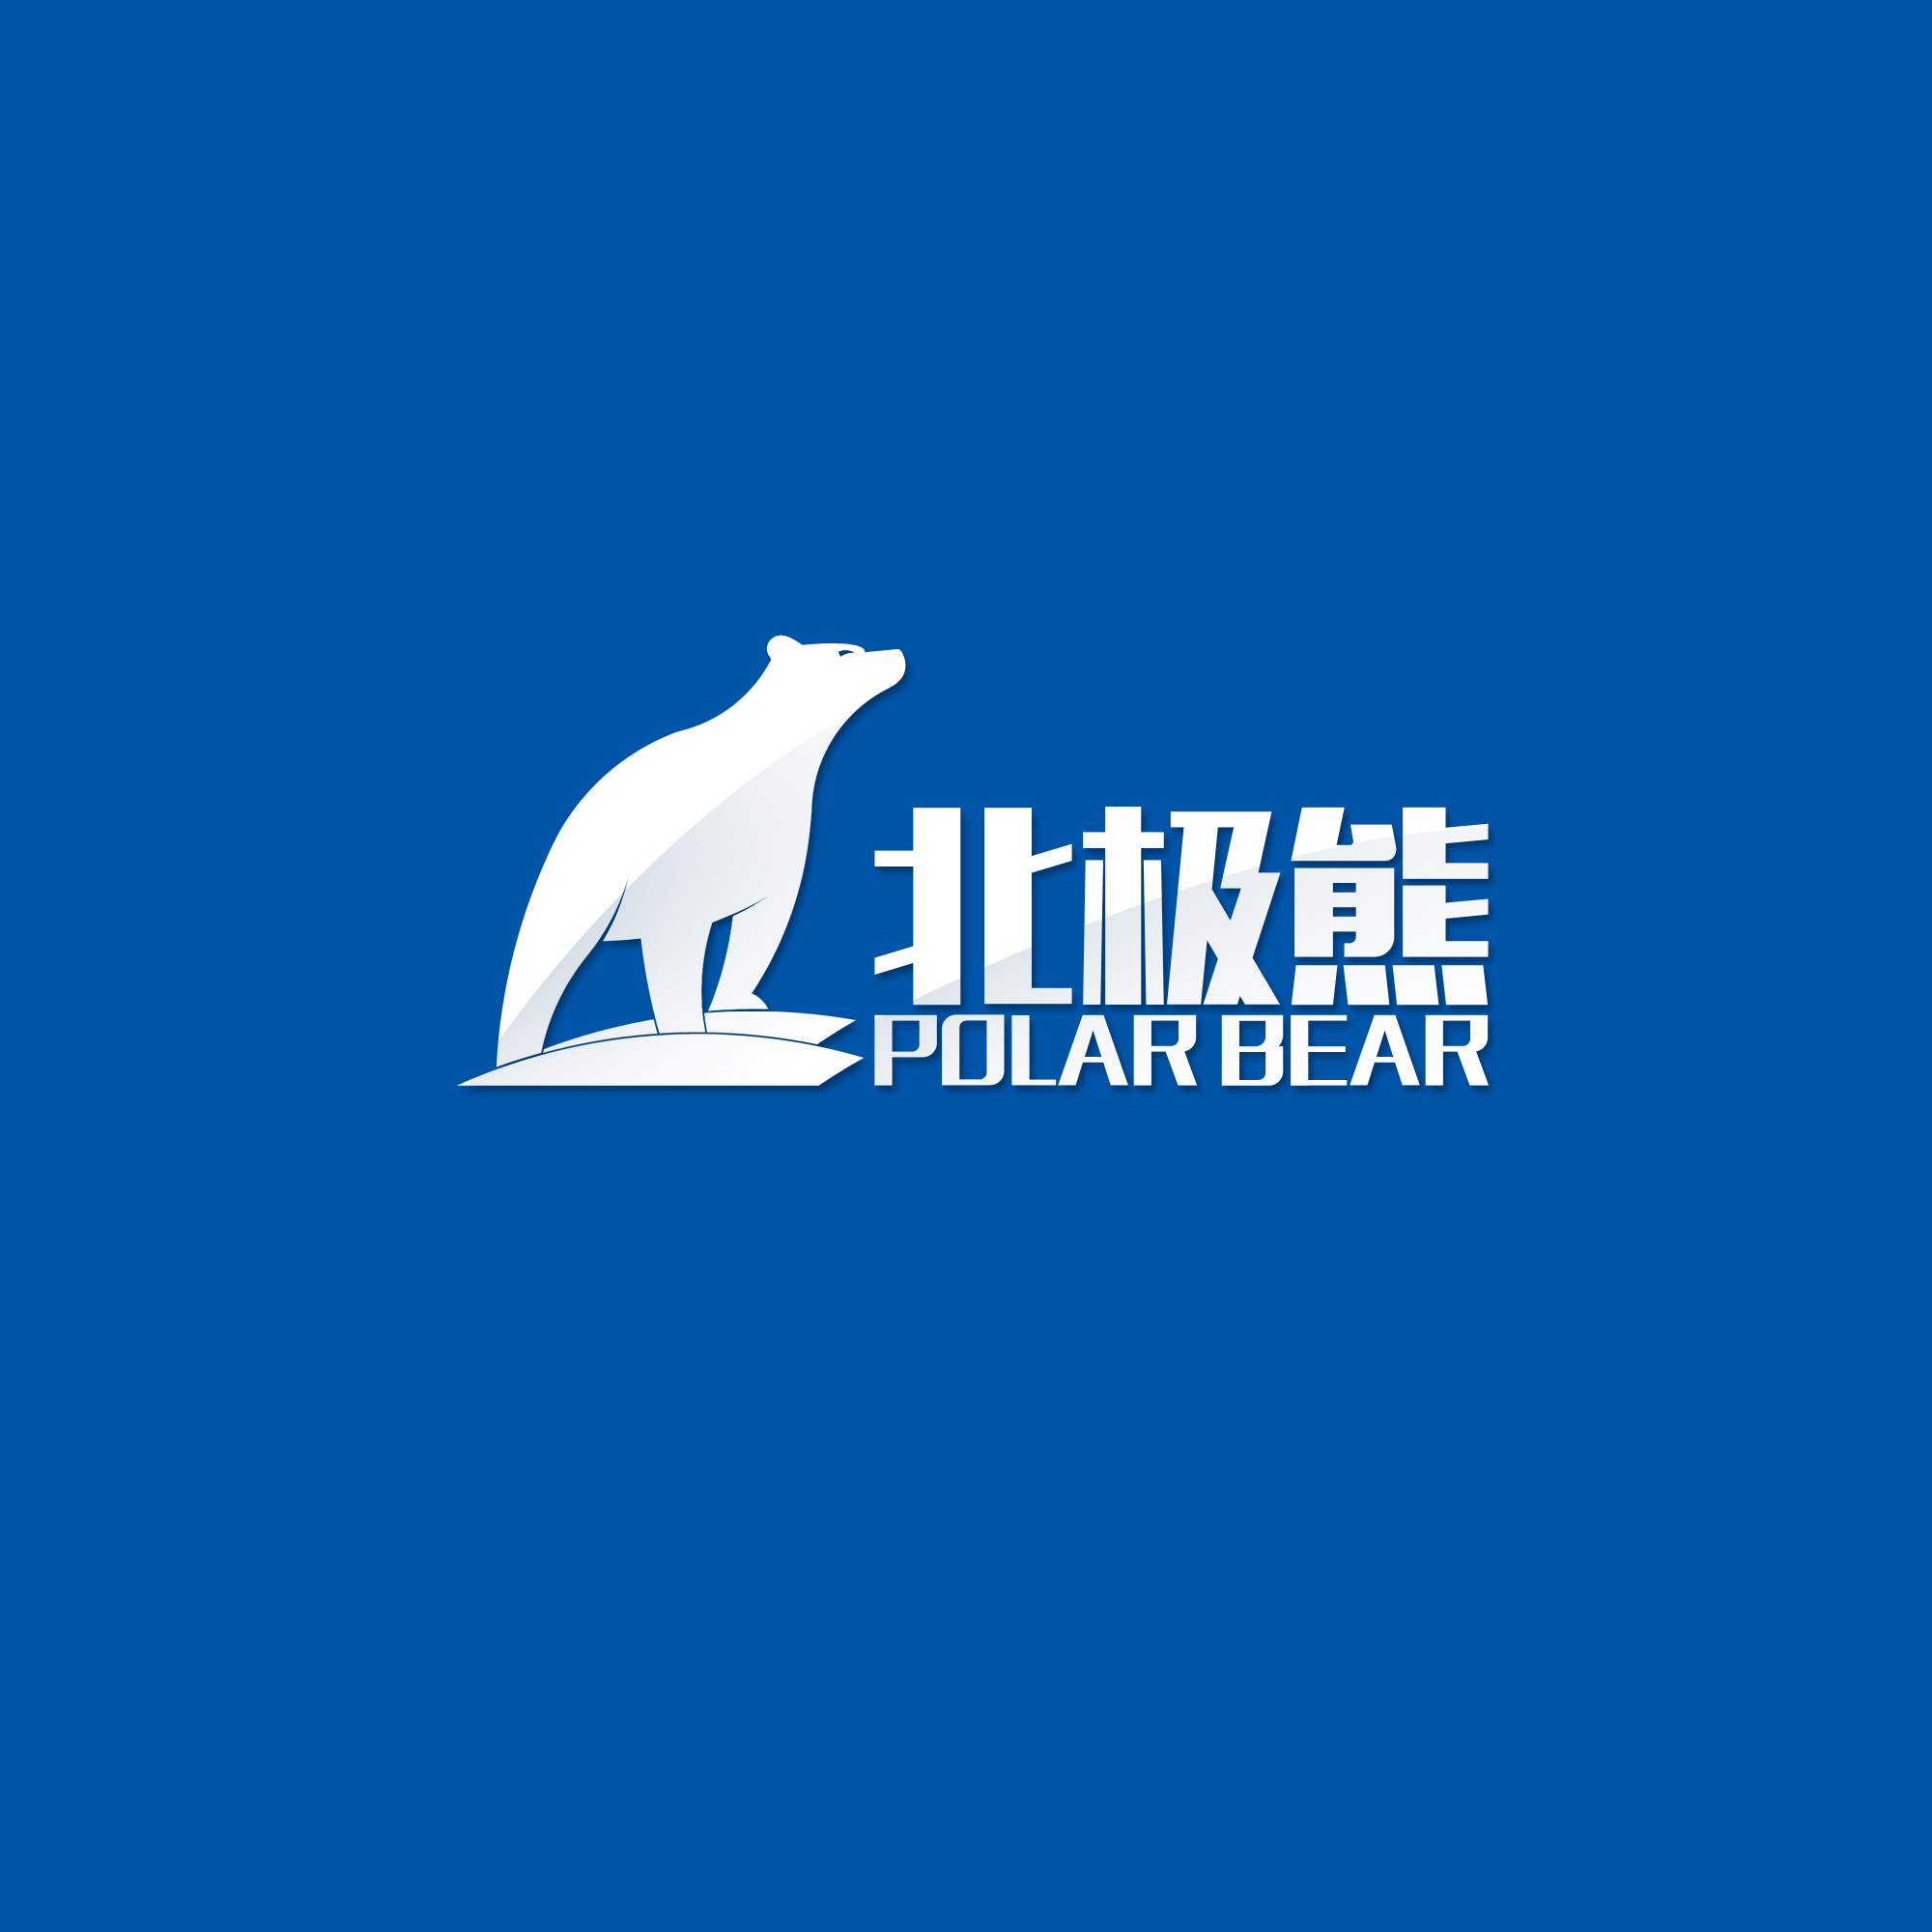 北极熊logo 北极熊标志 水产标志 钓具标志 钓鱼logo 钓鱼标志 北极熊